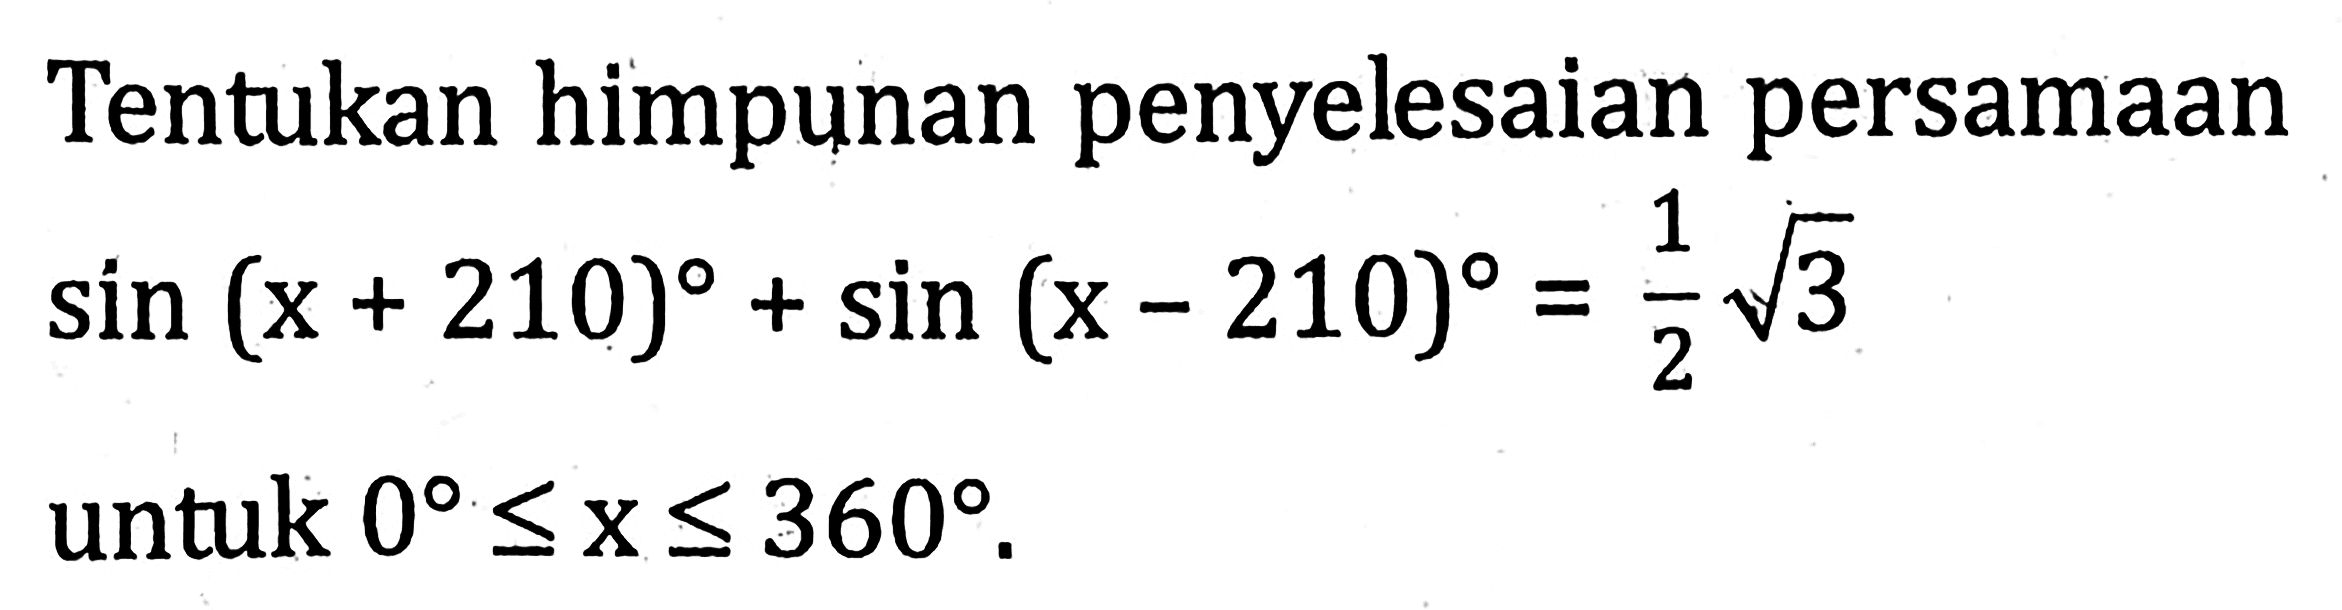 Tentukan himpunan penyelesaian persamaan sin(x+210)+sin(x-210)=(1/2)(akar(3)) untuk 0<=x<=360.